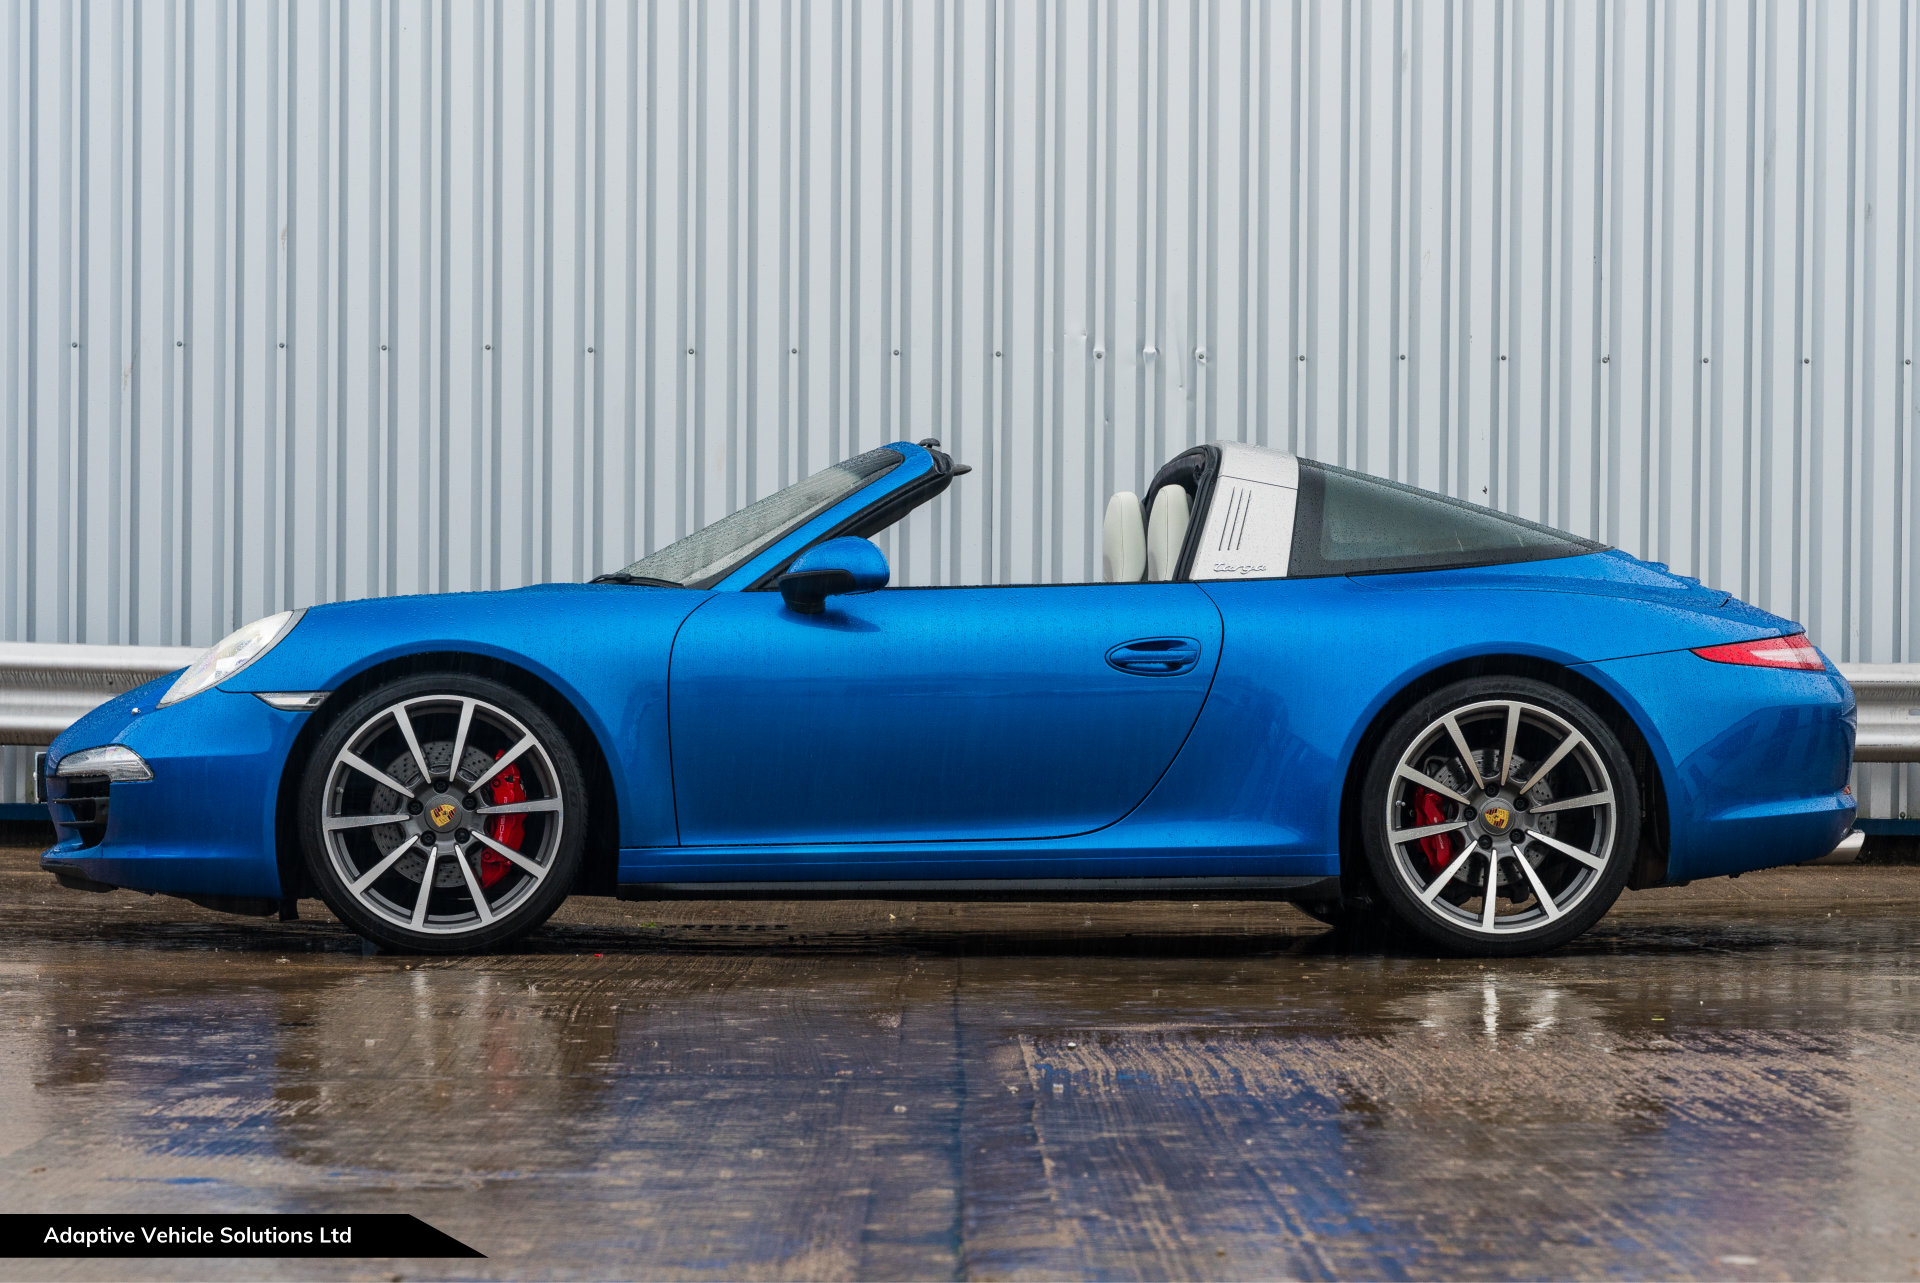 2014 Porsche 911 991 Targa 4S Sapphire Blue near side view